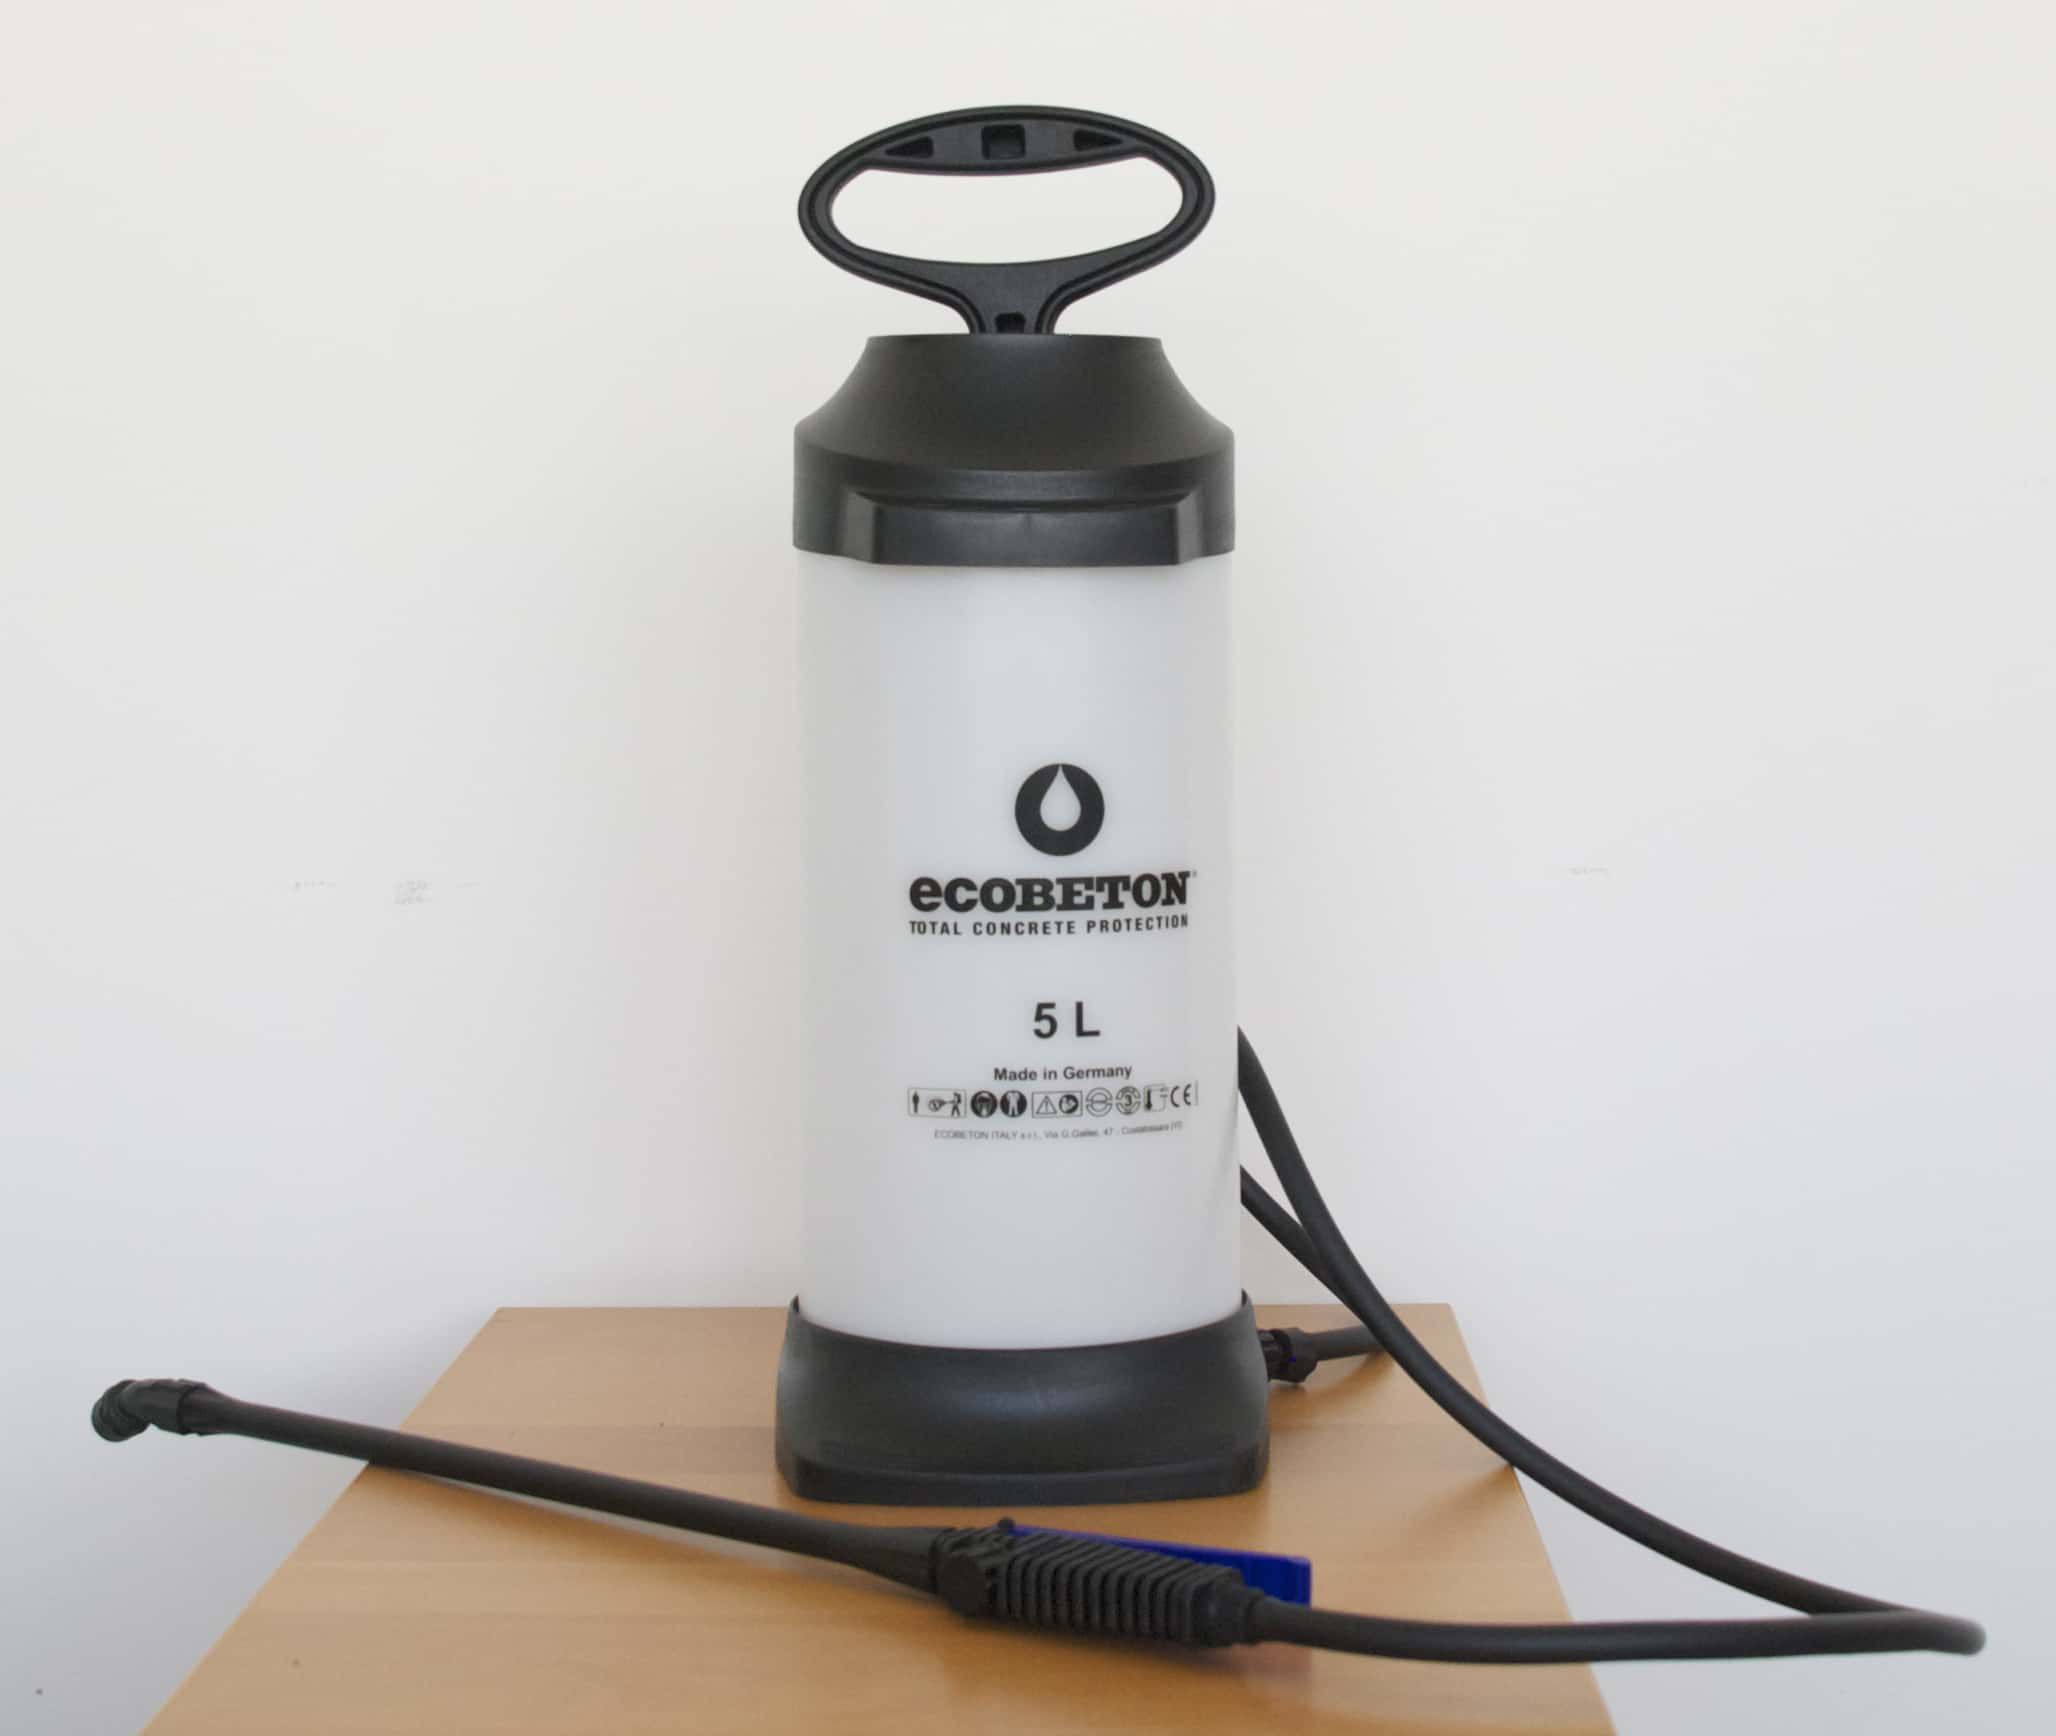 Pompa spruzzatore a bassa pressione Ecobeton